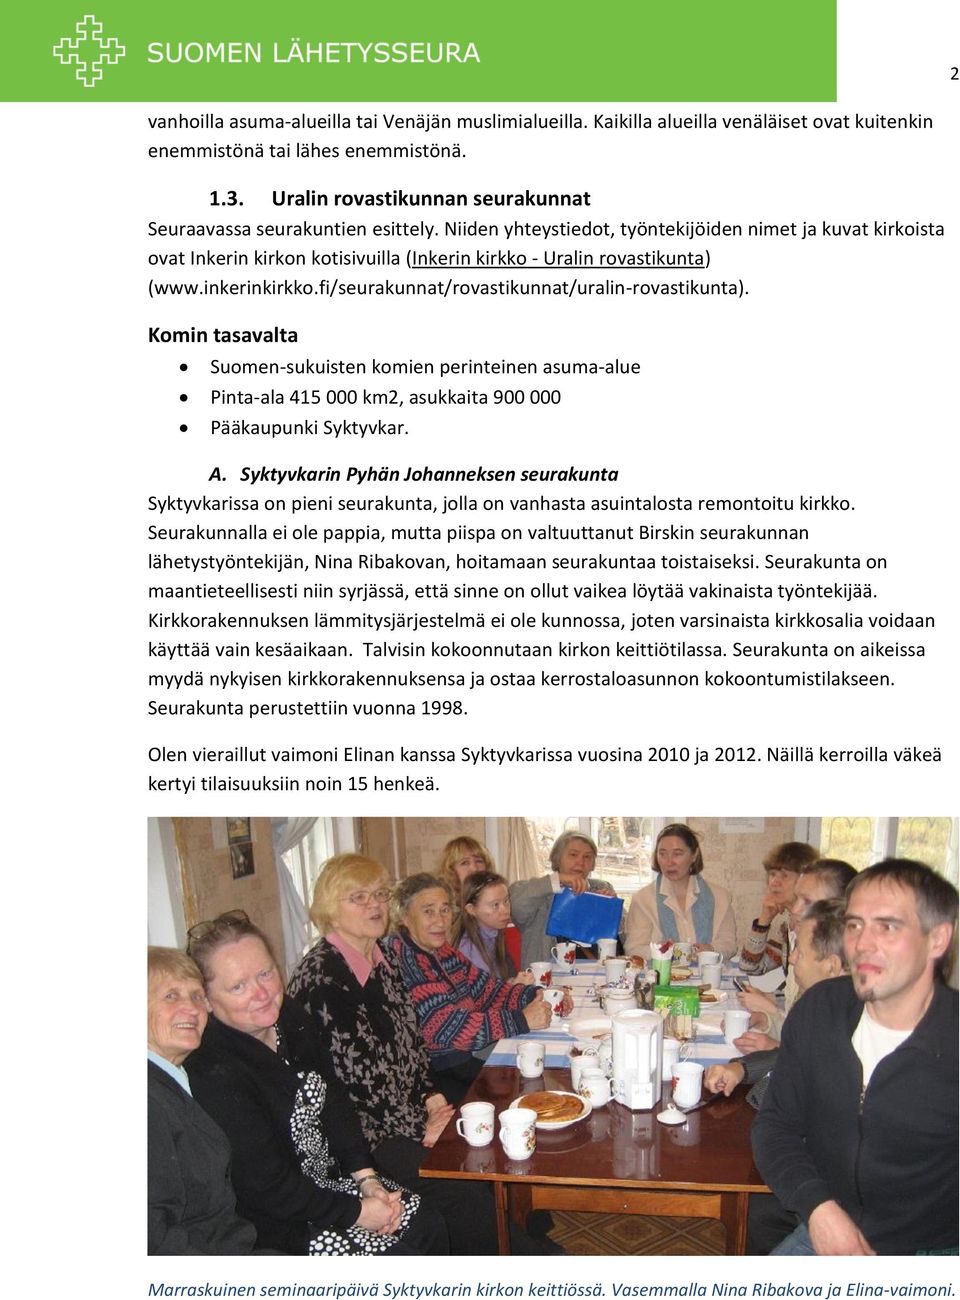 Niiden yhteystiedot, työntekijöiden nimet ja kuvat kirkoista ovat Inkerin kirkon kotisivuilla (Inkerin kirkko - Uralin rovastikunta) (www.inkerinkirkko.